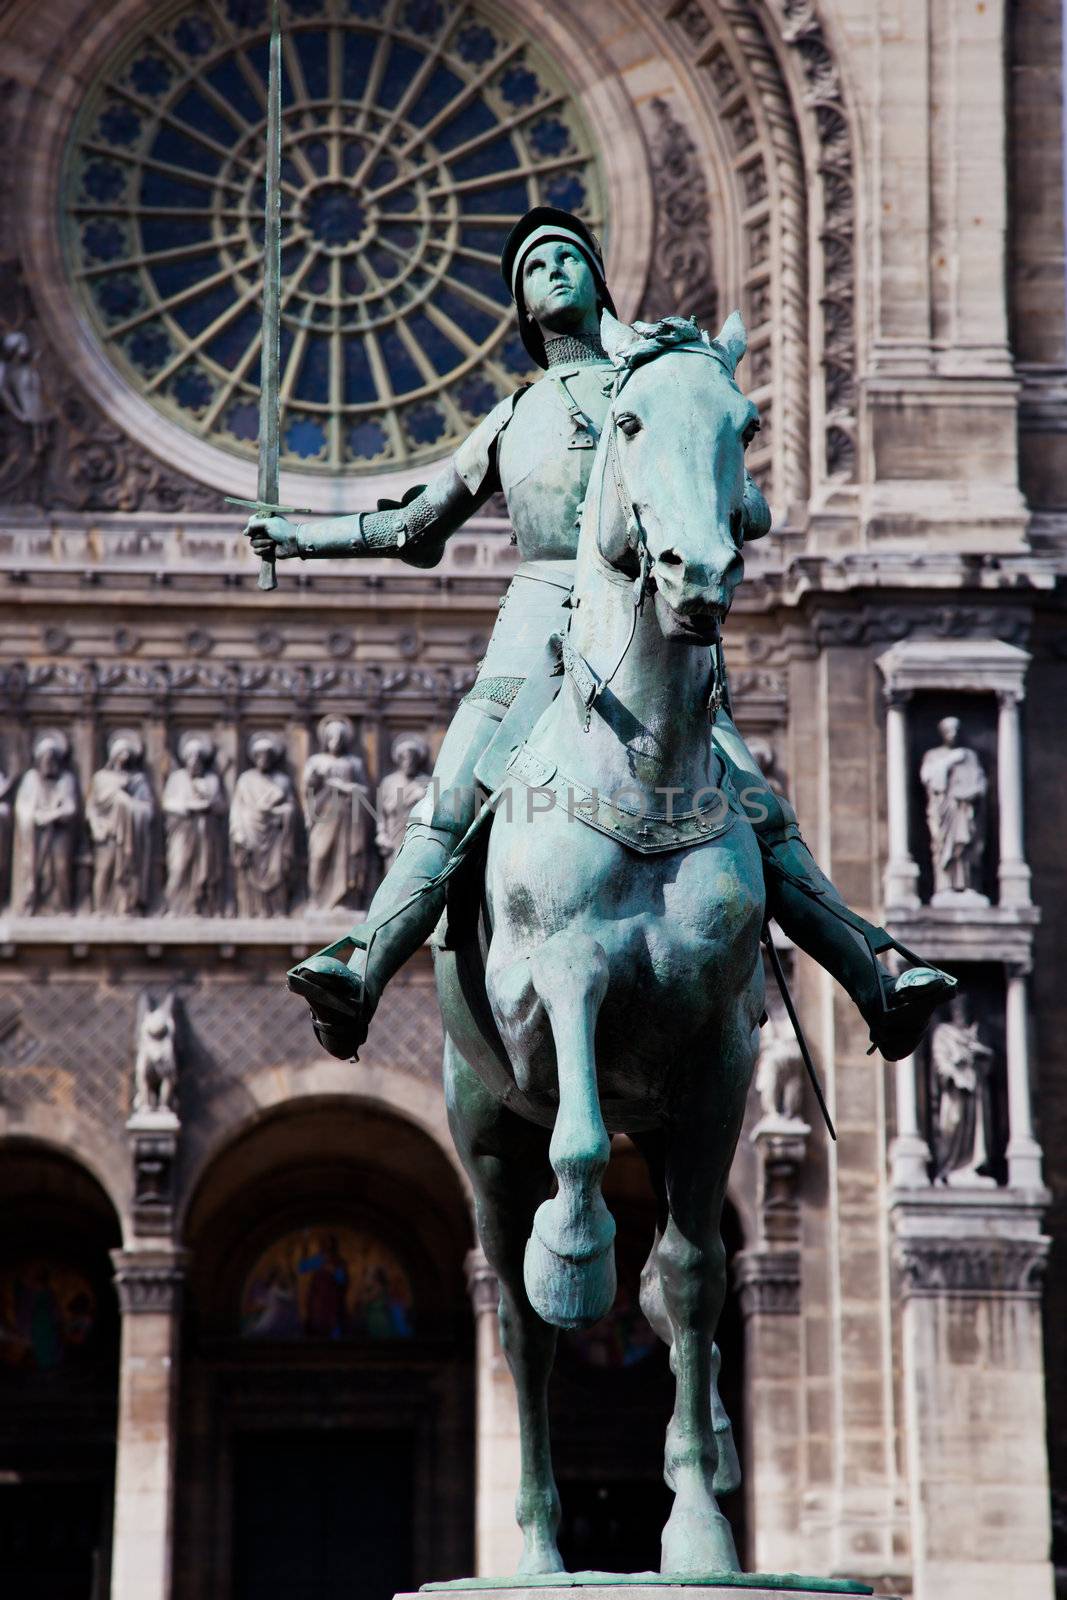 Jeanne d'Arc statue, Paris France by photocreo